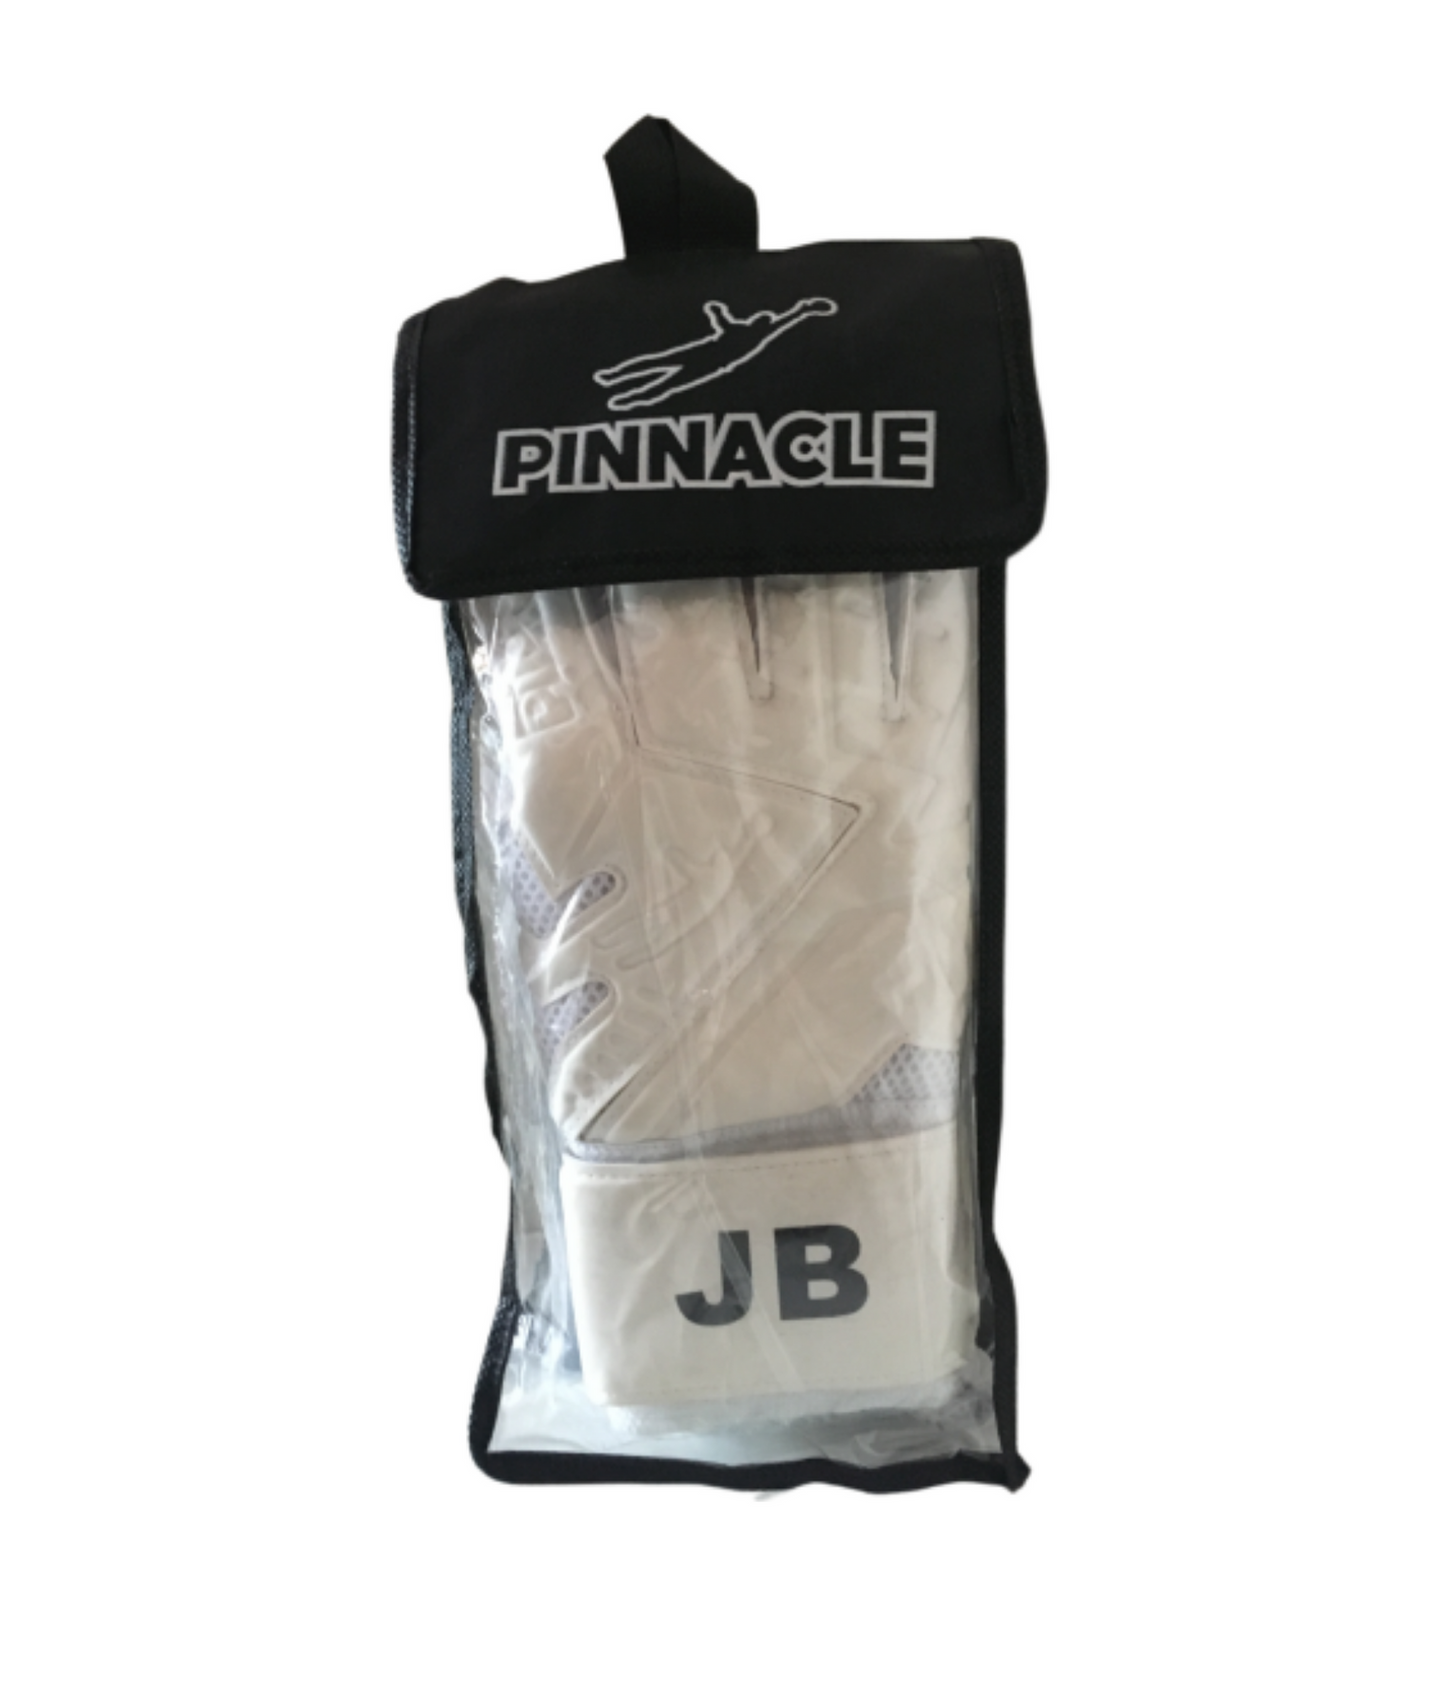 Pinnacle Glove Bag - Pinnacle Goalkeeping